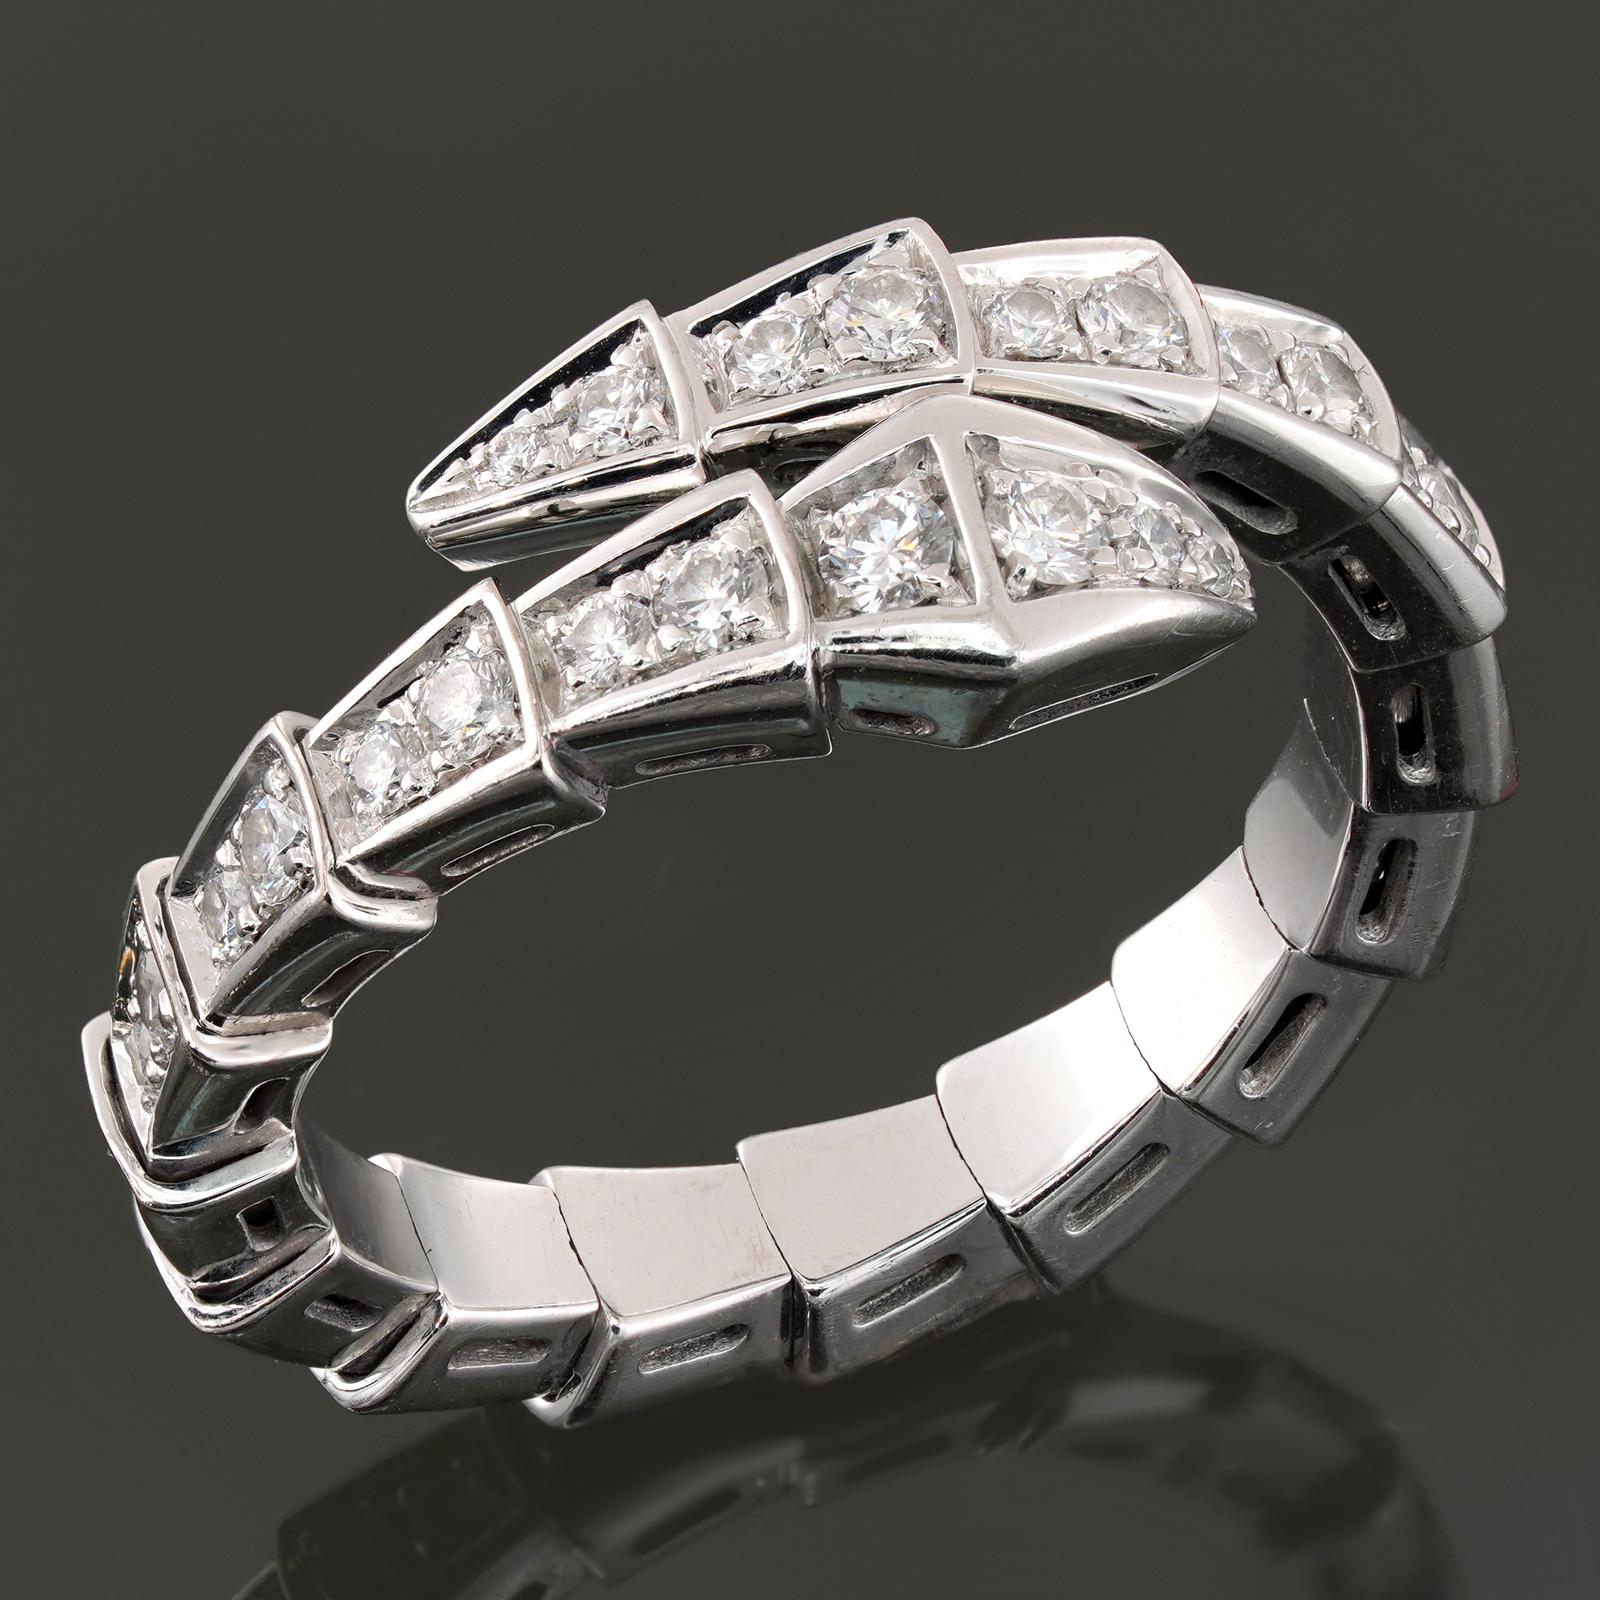 Dieser wunderschöne Ring von Bvlgari aus der kultigen Serpenti Viper-Kollektion zeichnet sich durch ein zweireihiges Design aus, das aus 18 Karat Weißgold gefertigt und mit runden D-E-F VVS1-VVS2-Diamanten im Brillantschliff besetzt ist. Der Ring